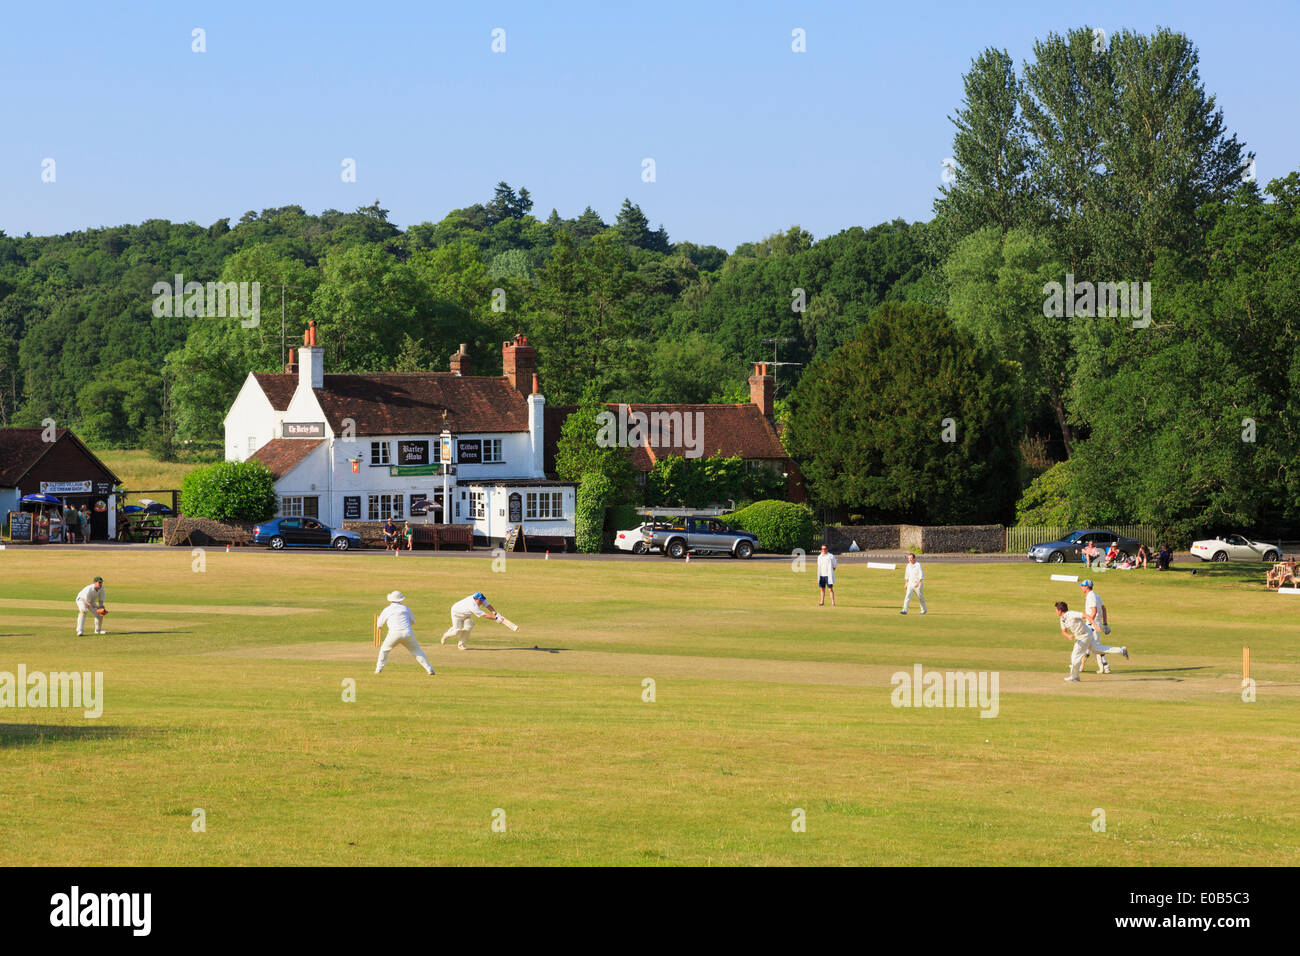 Les équipes locales de jouer un match de cricket sur la place du village en face de Barley Mow pub sur une soirée d'été. Tilford Surrey England UK Banque D'Images